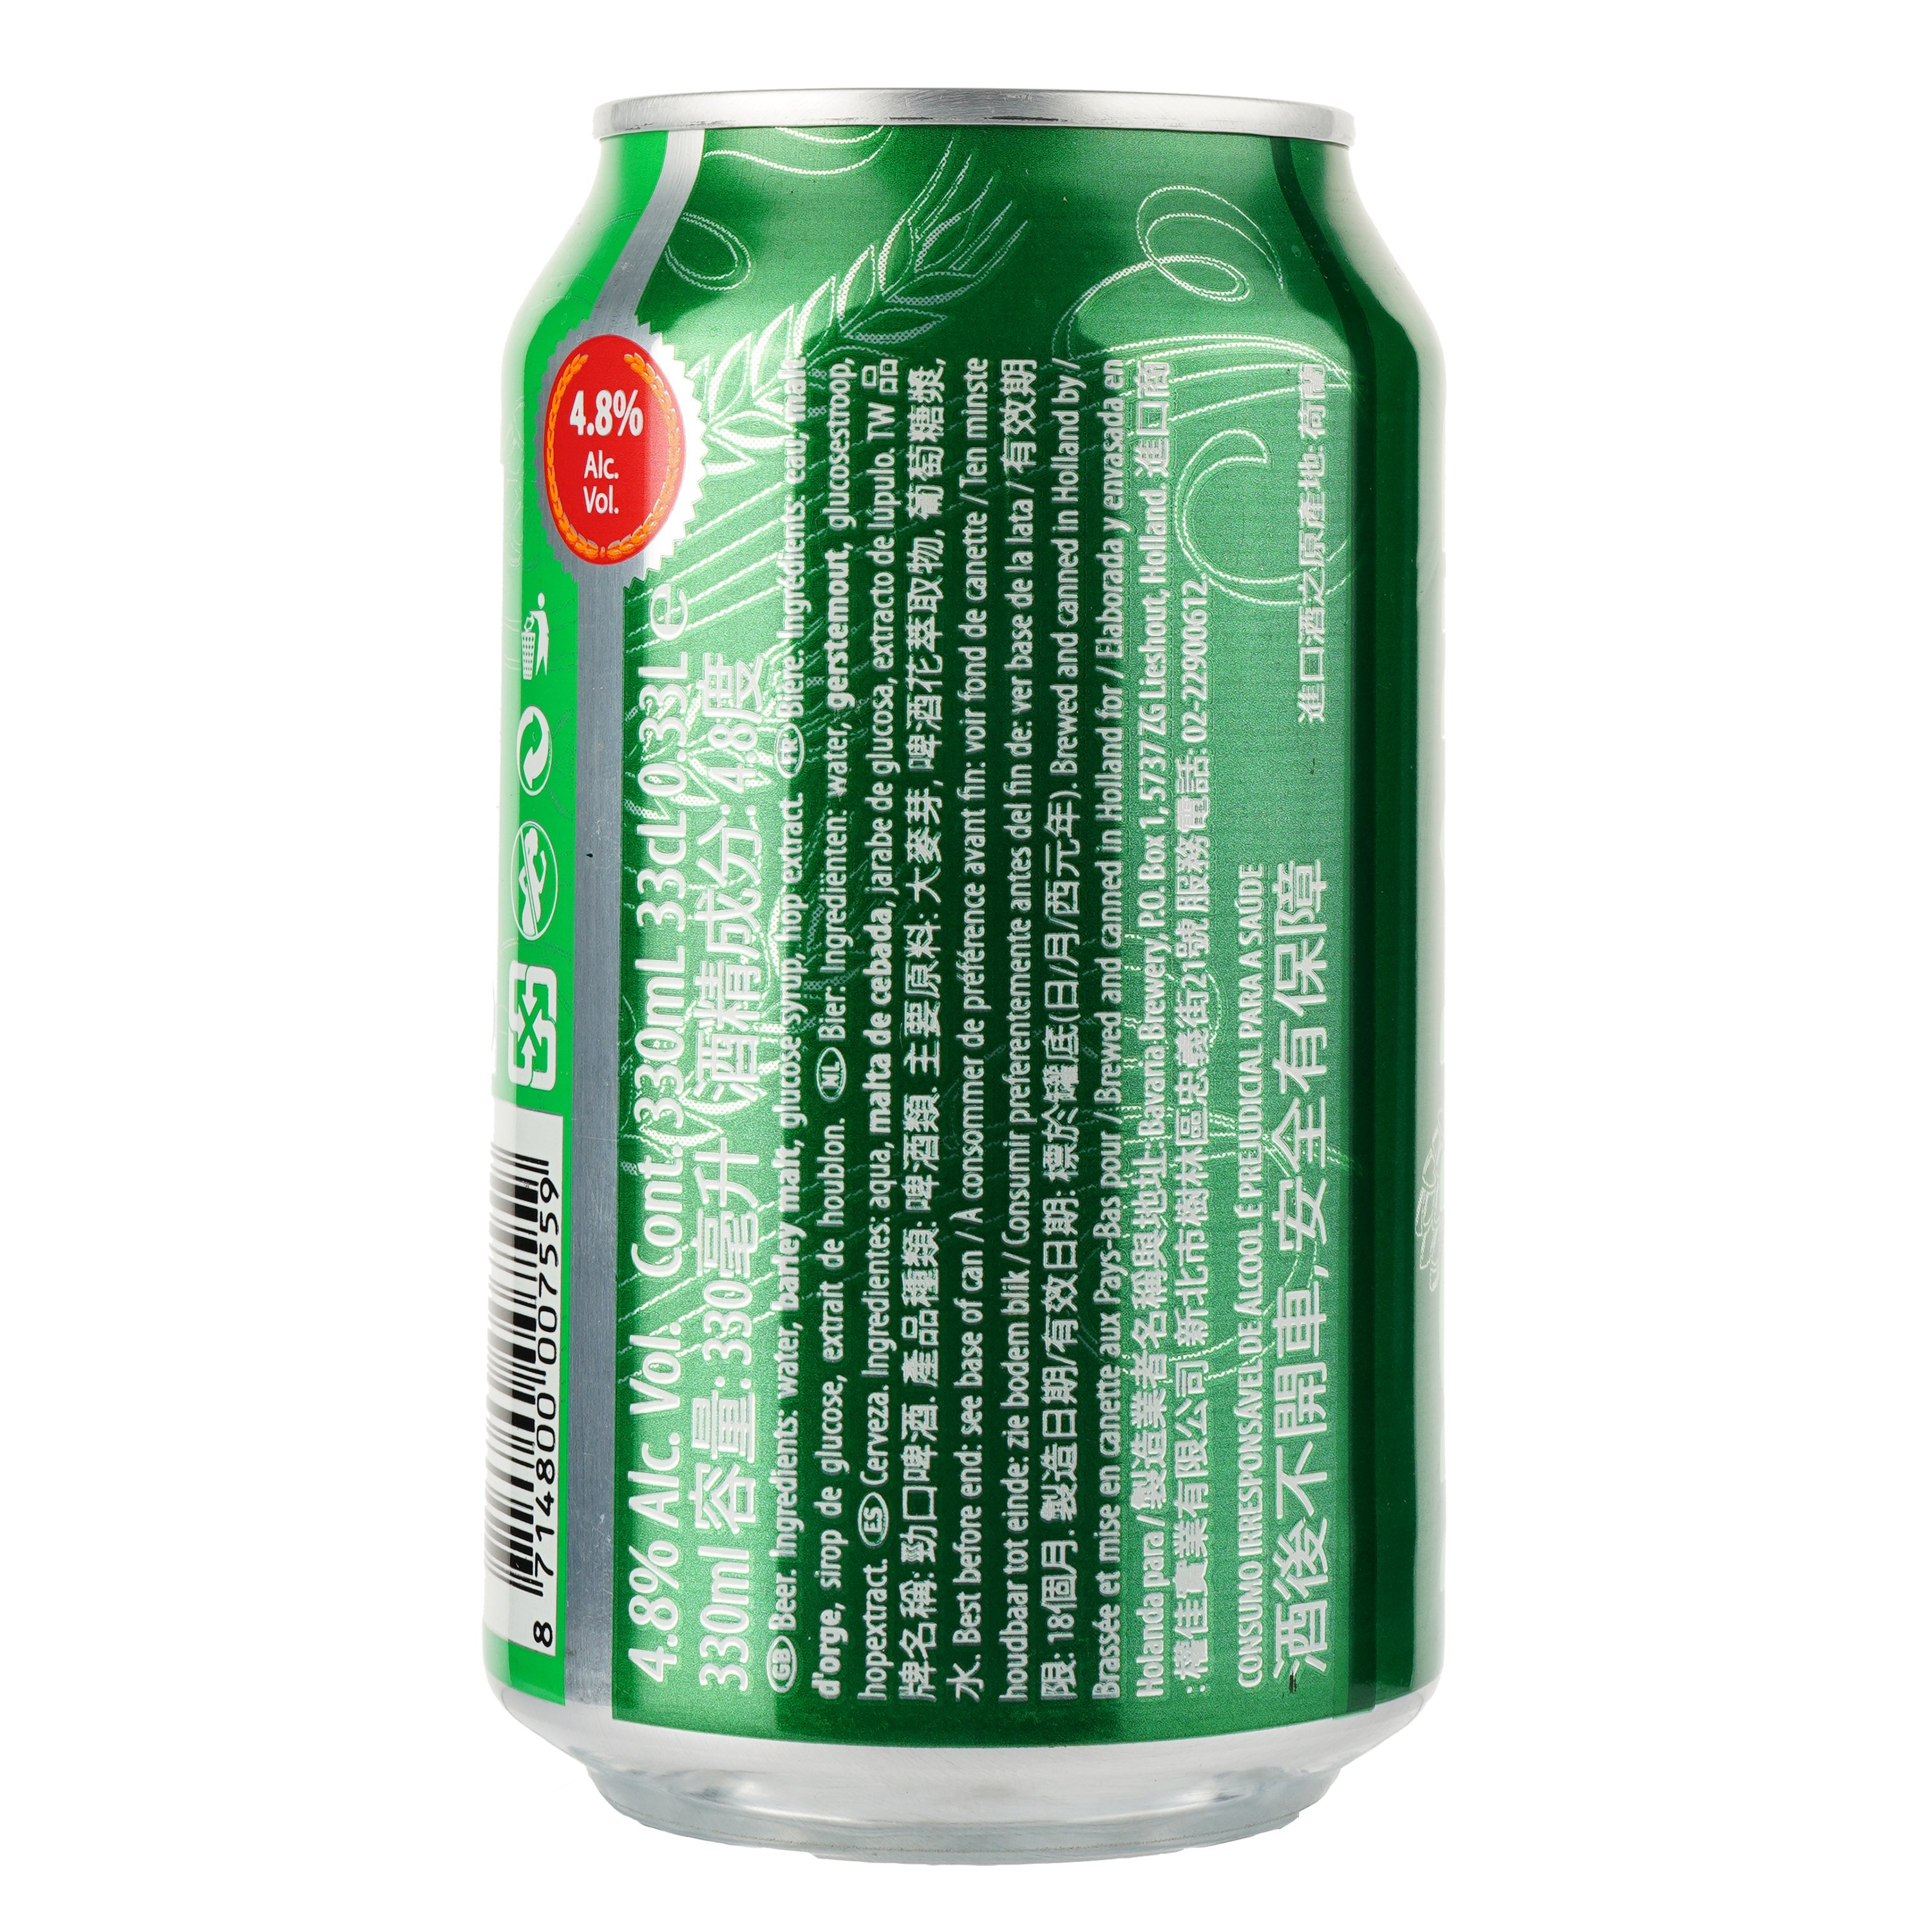 Пиво Holland Import, светлое, фильтрованное, 4,8%, ж/б, 0,33 л - фото 2